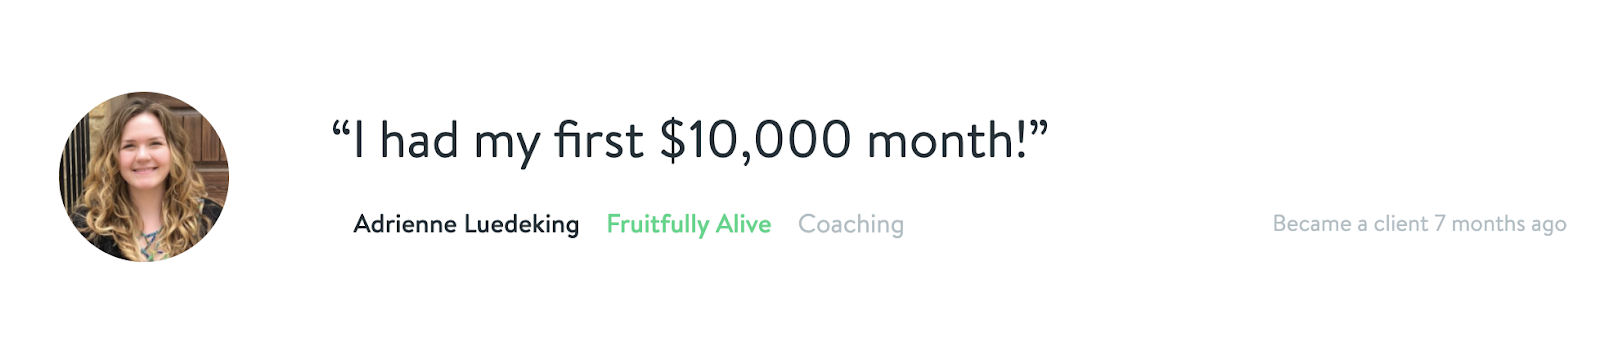 "I had my first $10,000 month!" - Adrienne Luedeking